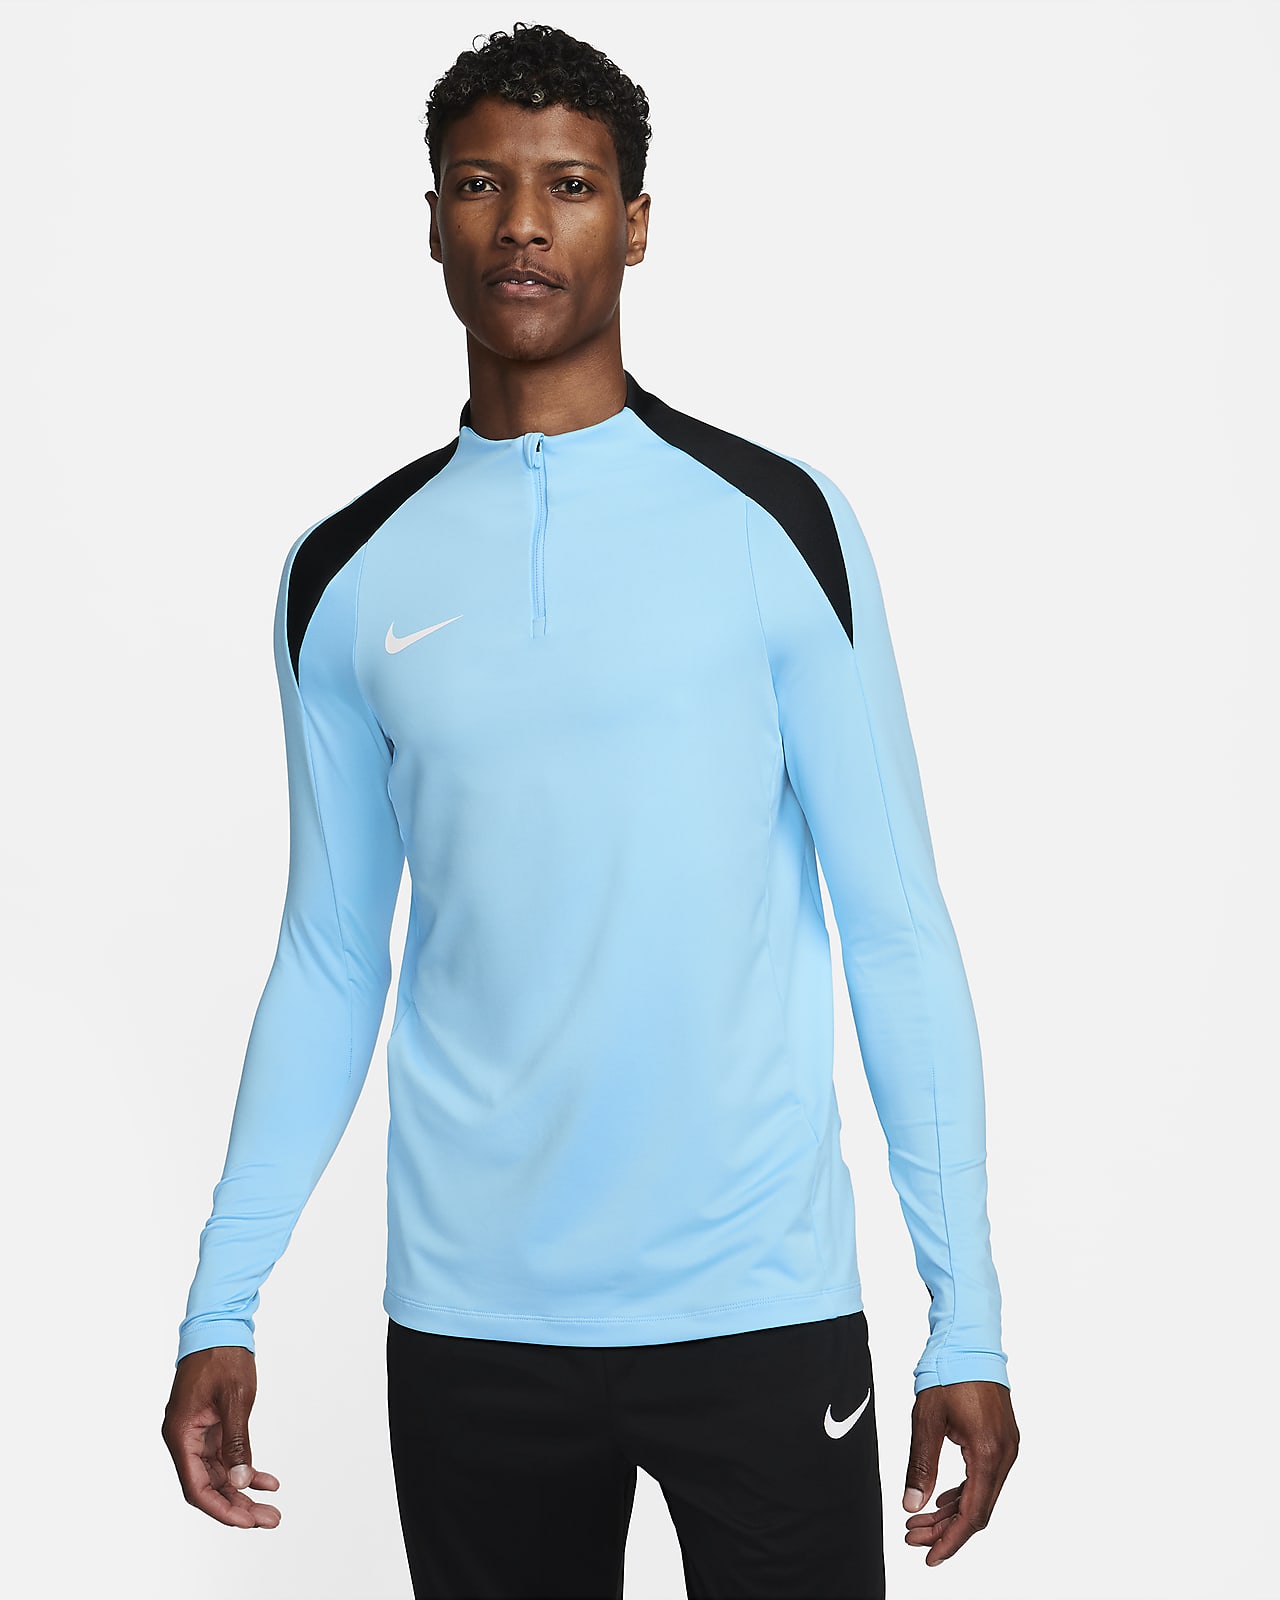 Ανδρική ποδοσφαιρική μπλούζα προπόνησης Dri-FIT με φερμουάρ στο 1/2 του μήκους Nike Strike